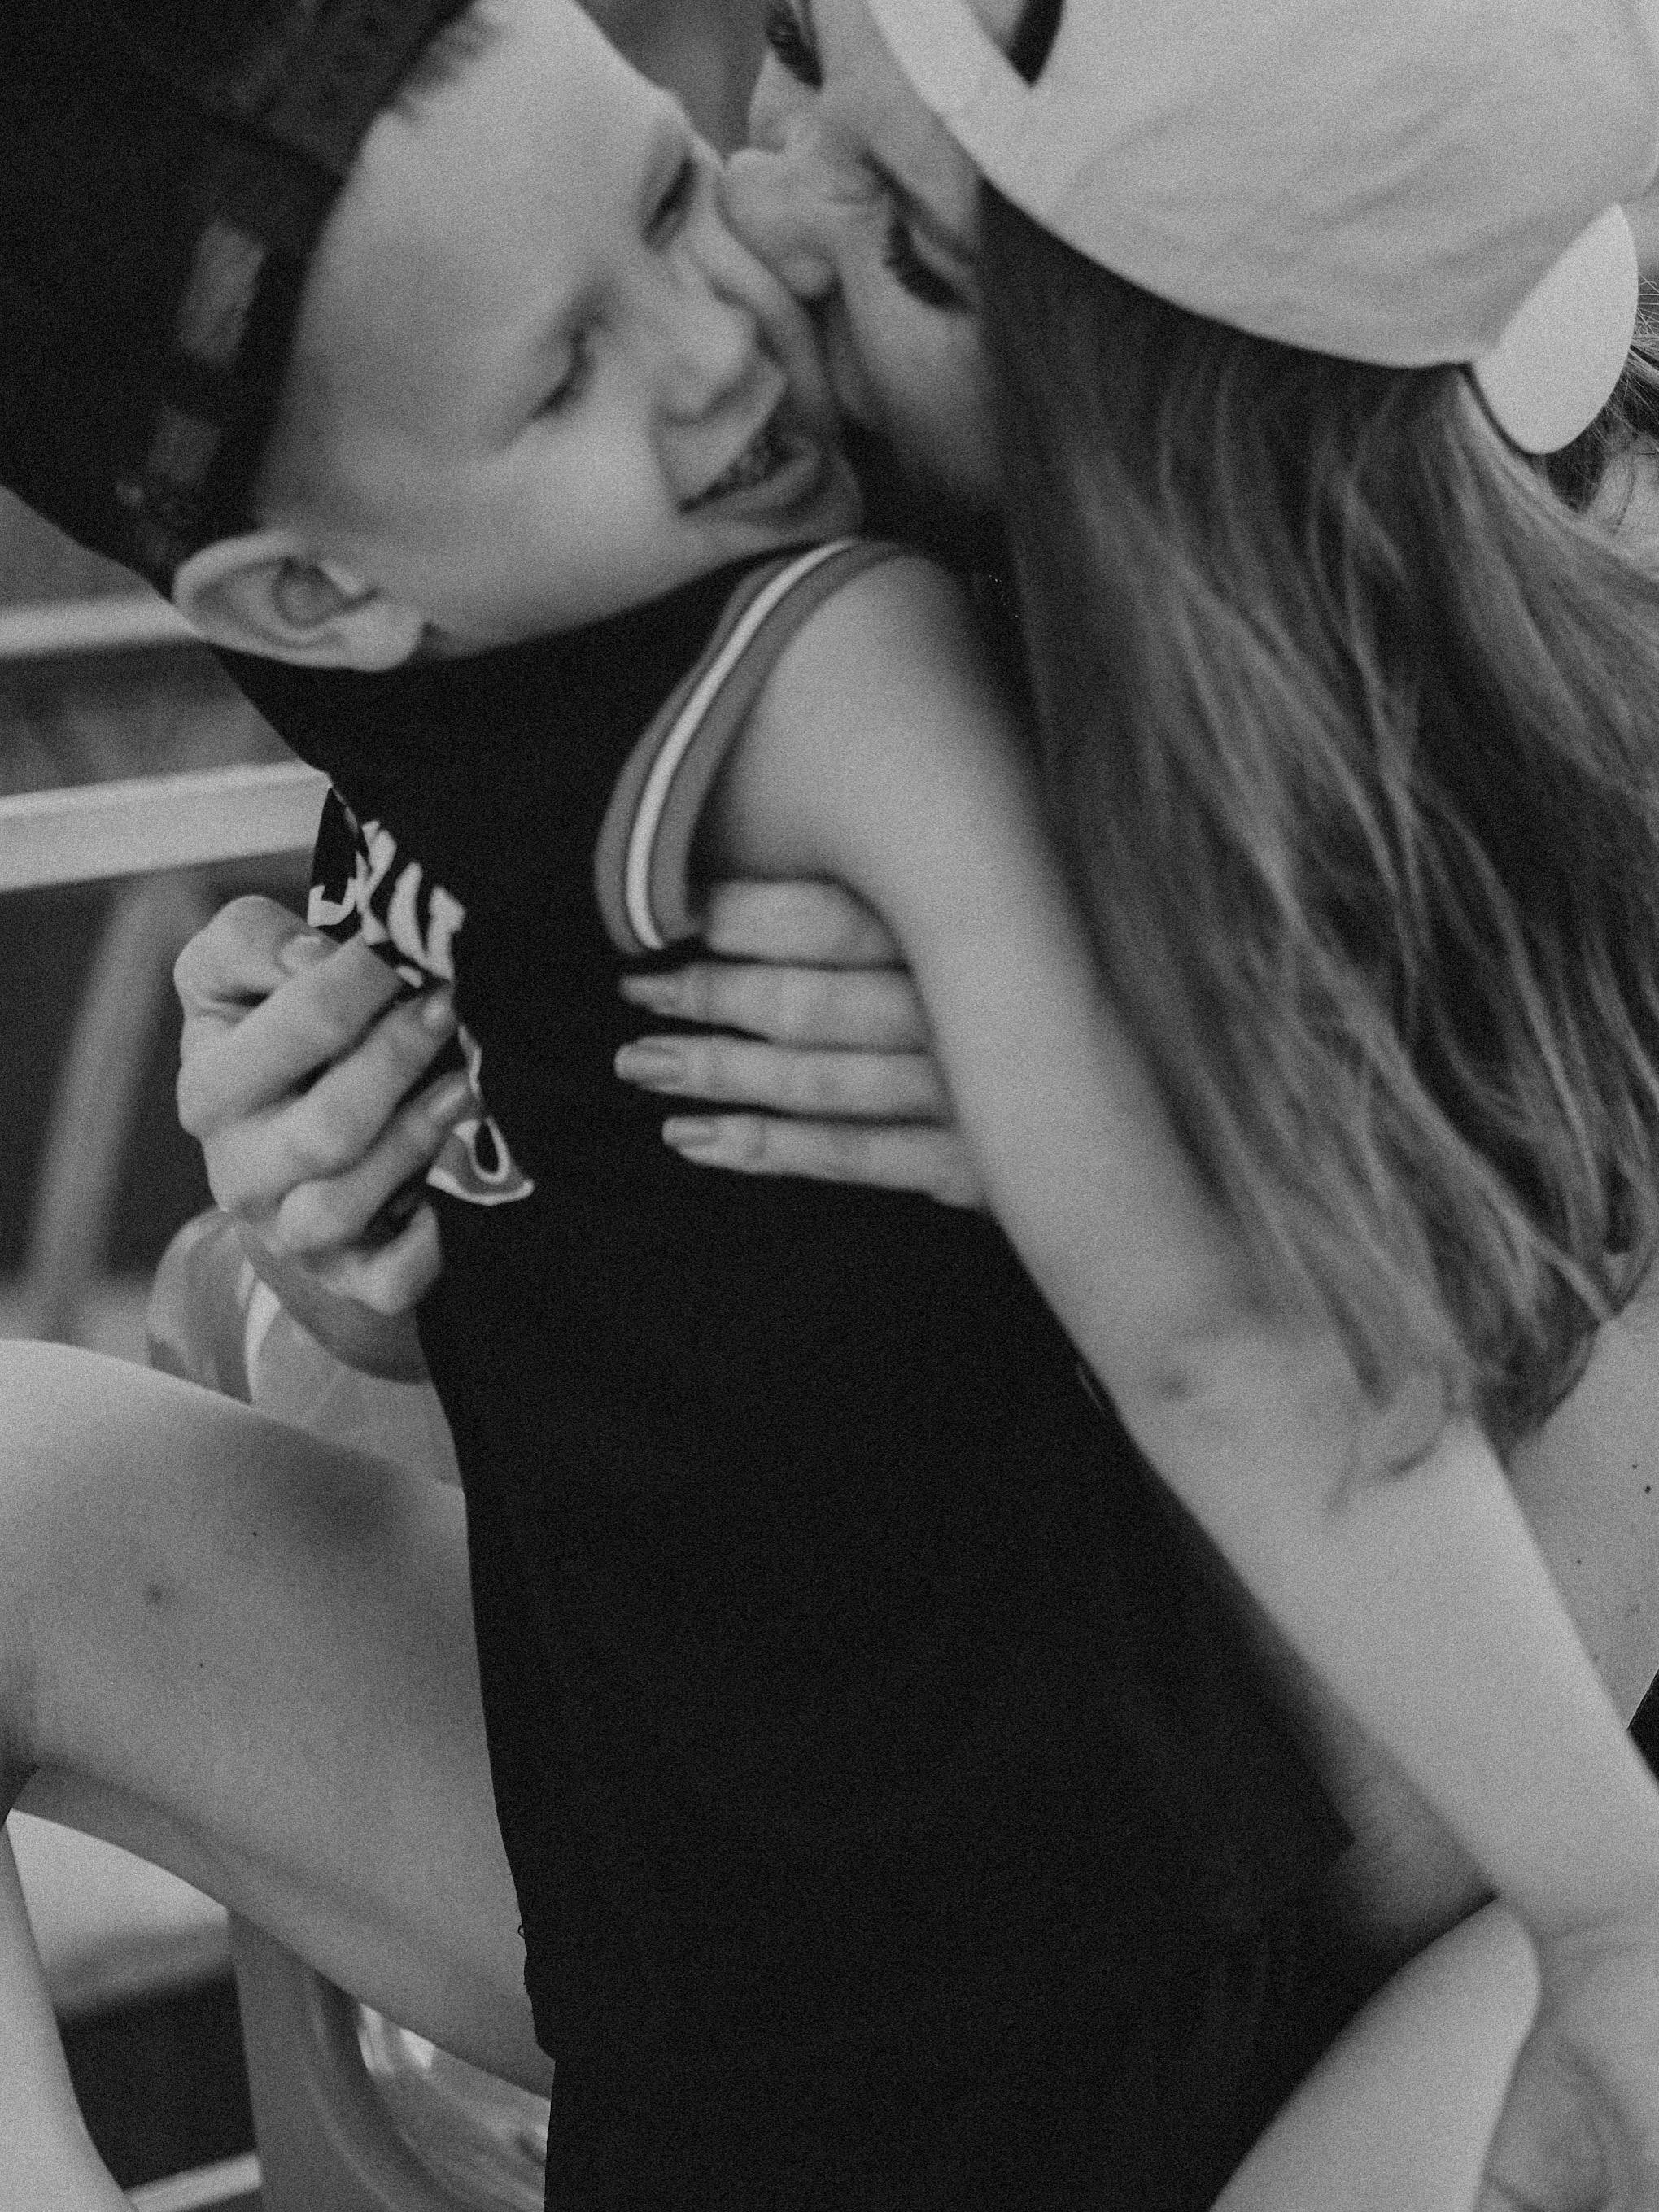 tumblr boy and girl kissing